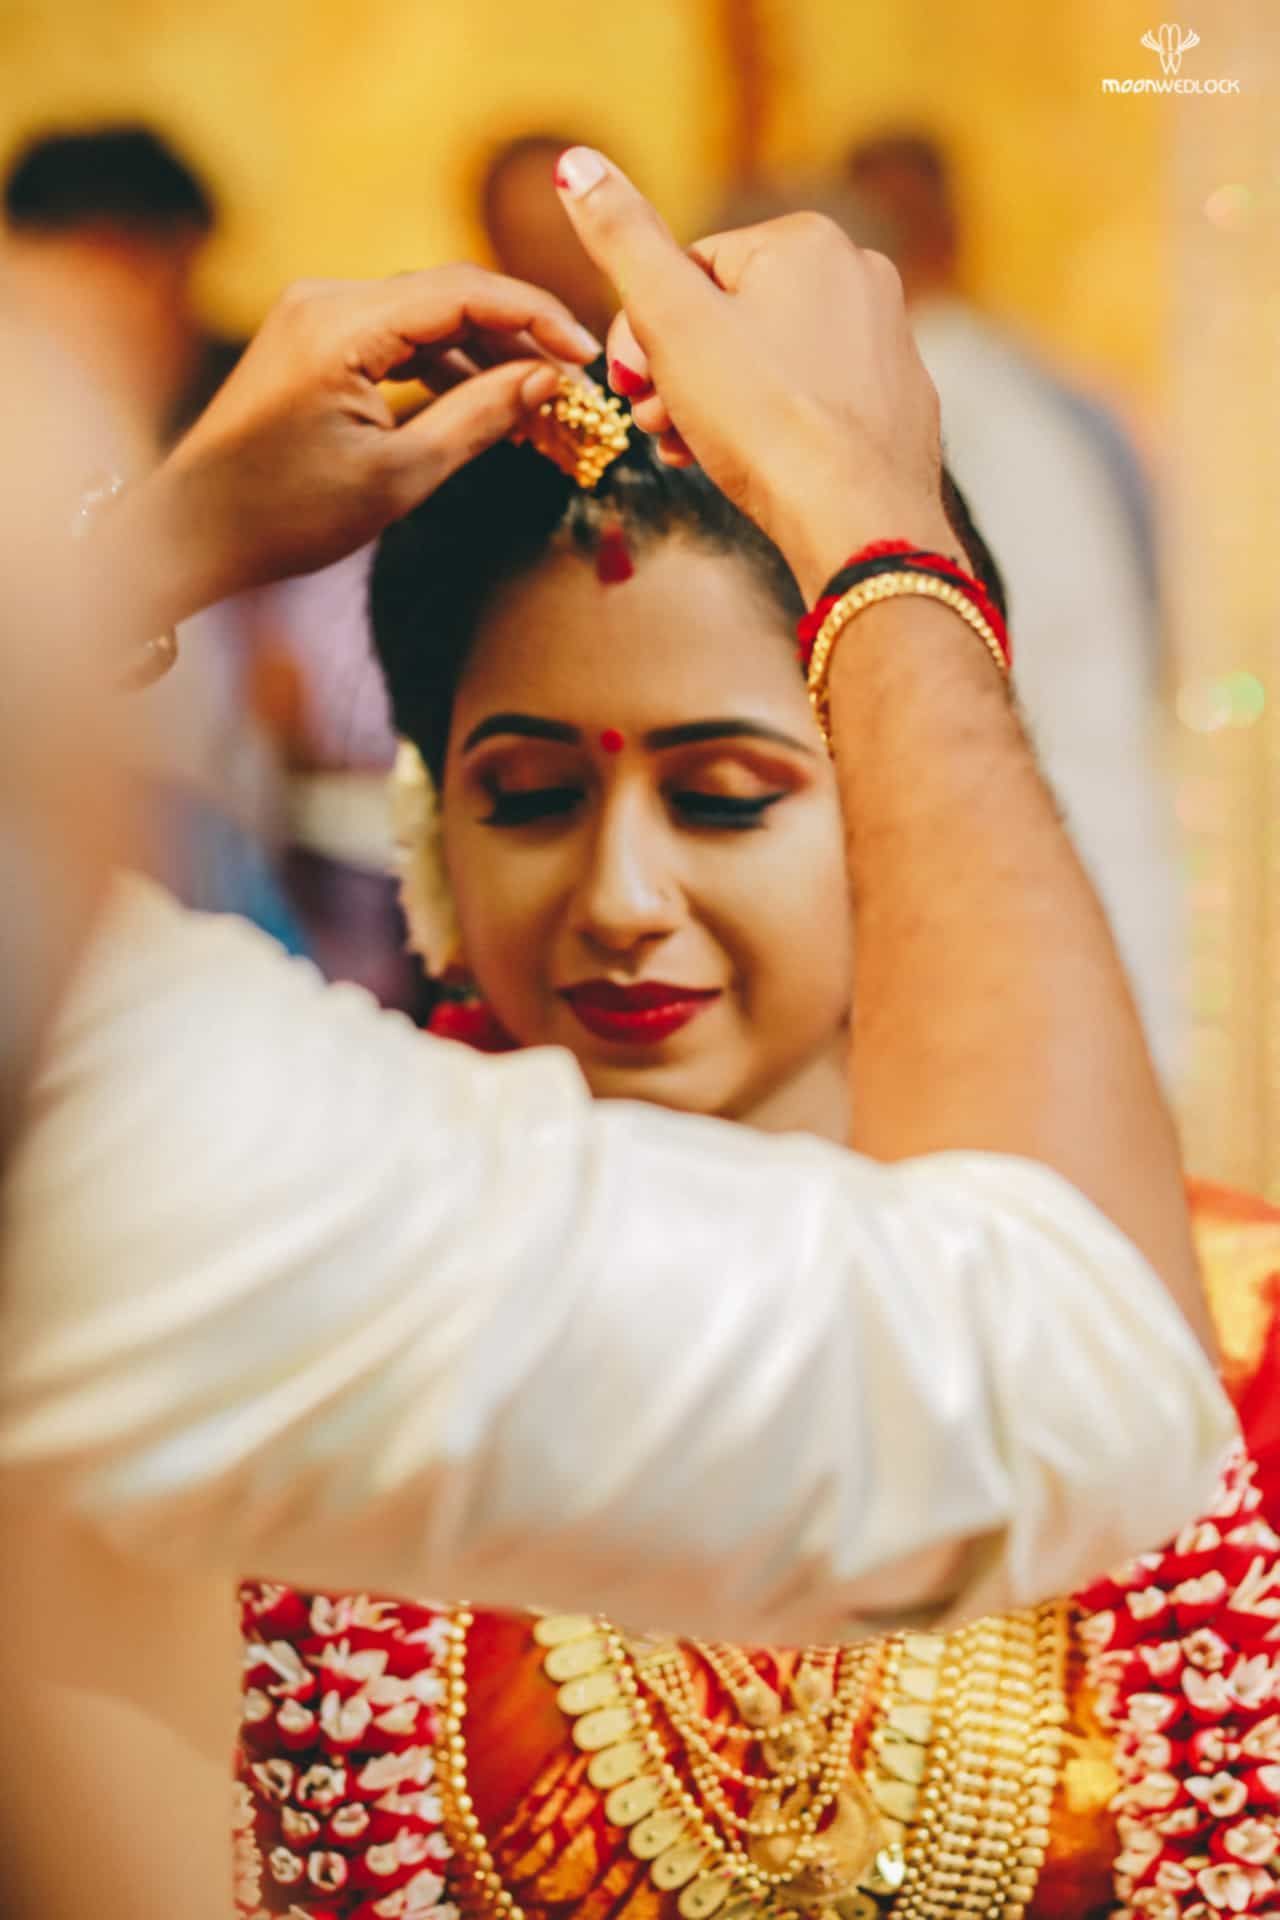 Traditional Kerala Wedding. Indian wedding photography poses, Wedding couple poses photography, Pre wedding photohoot props